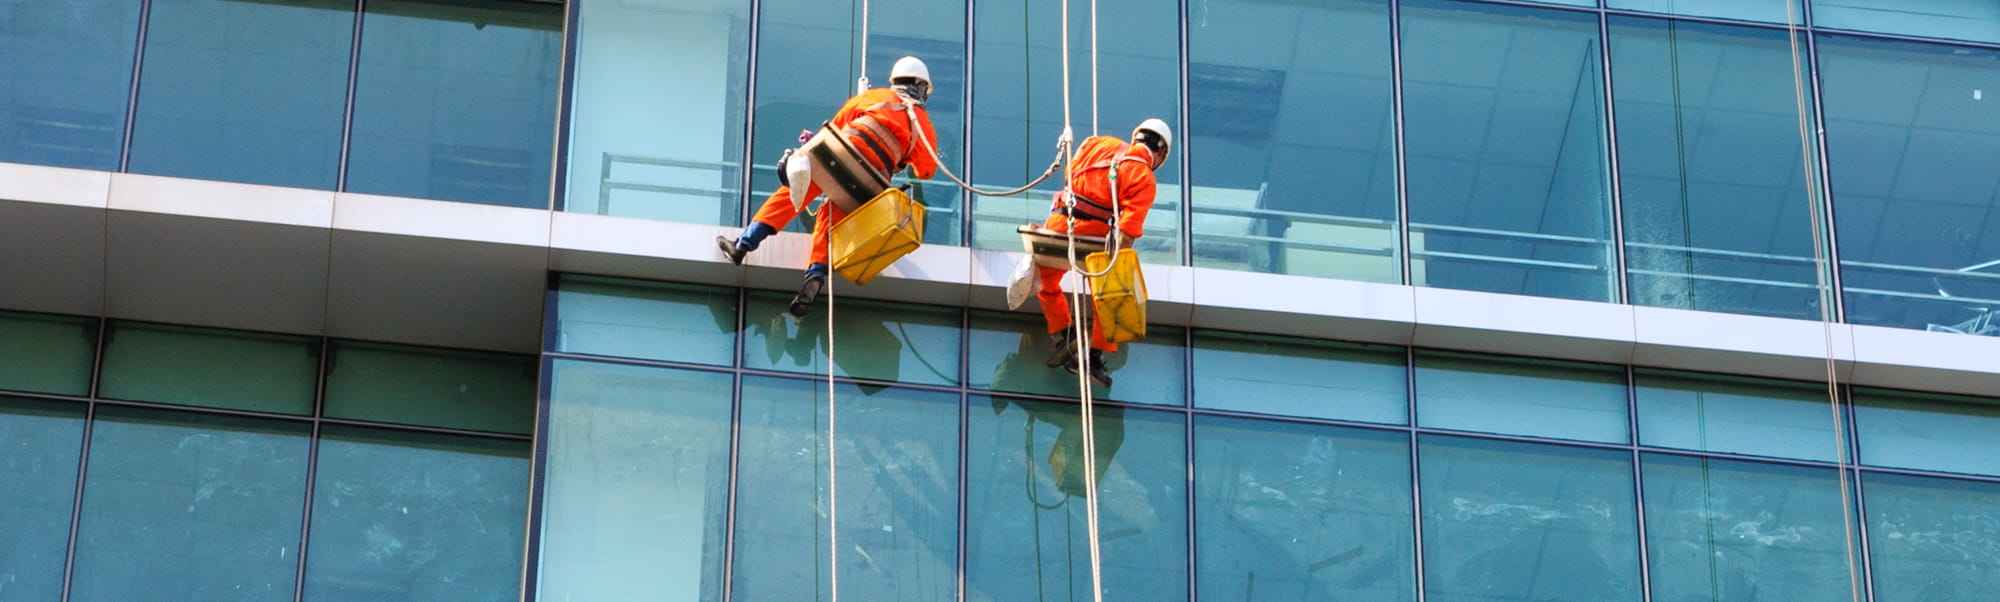 Des employés de l'entreprise l'Entretien effectuent un nettoyage en hauteur des vitres d'un immeuble